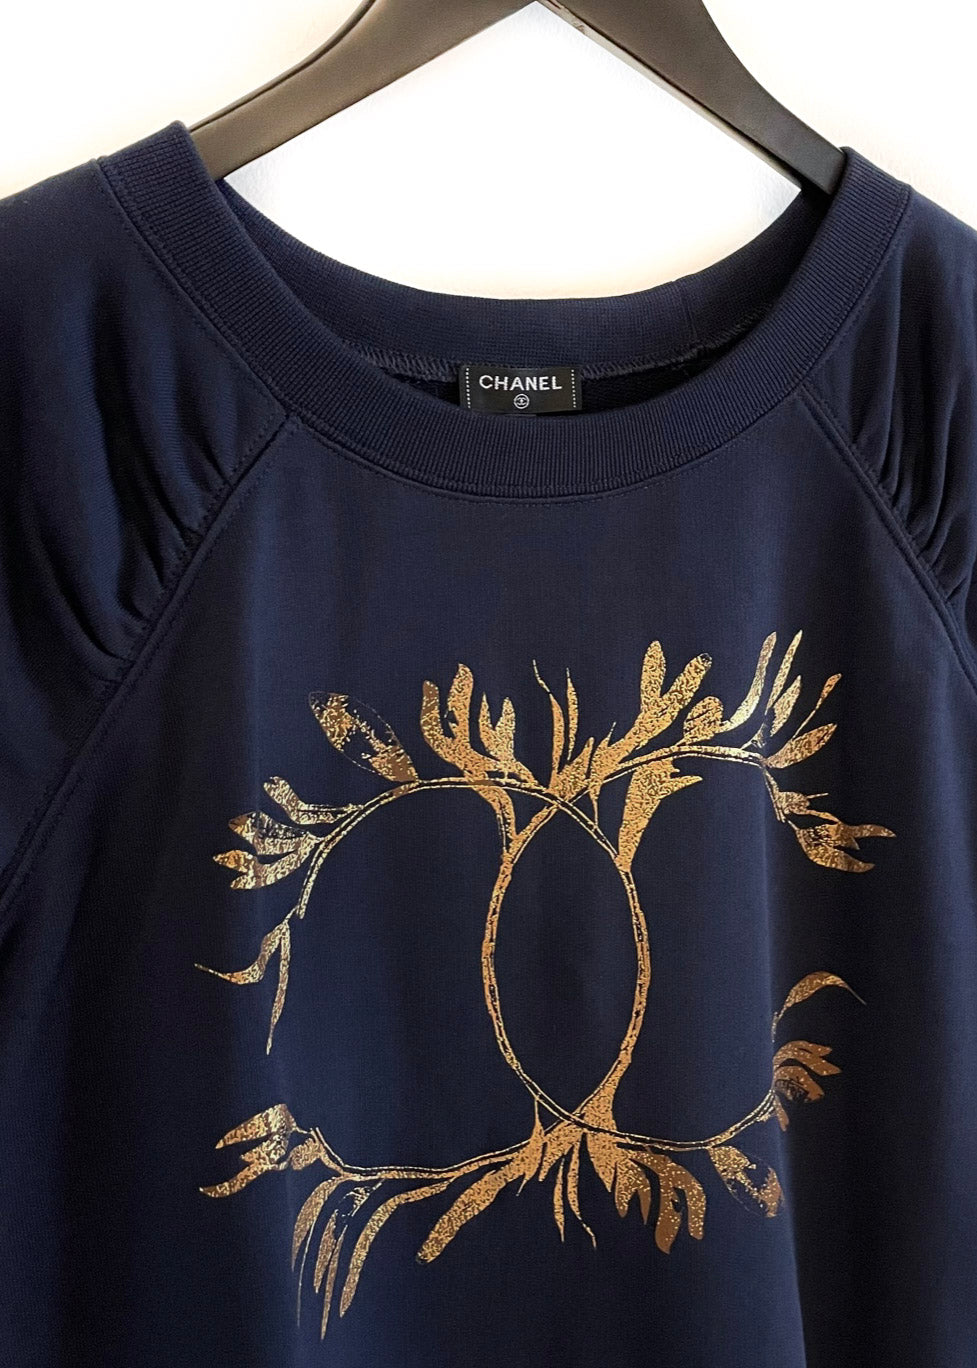 T-shirt bleu marine avec de la collection croisière Chanel 2018 avec impression dorée CC